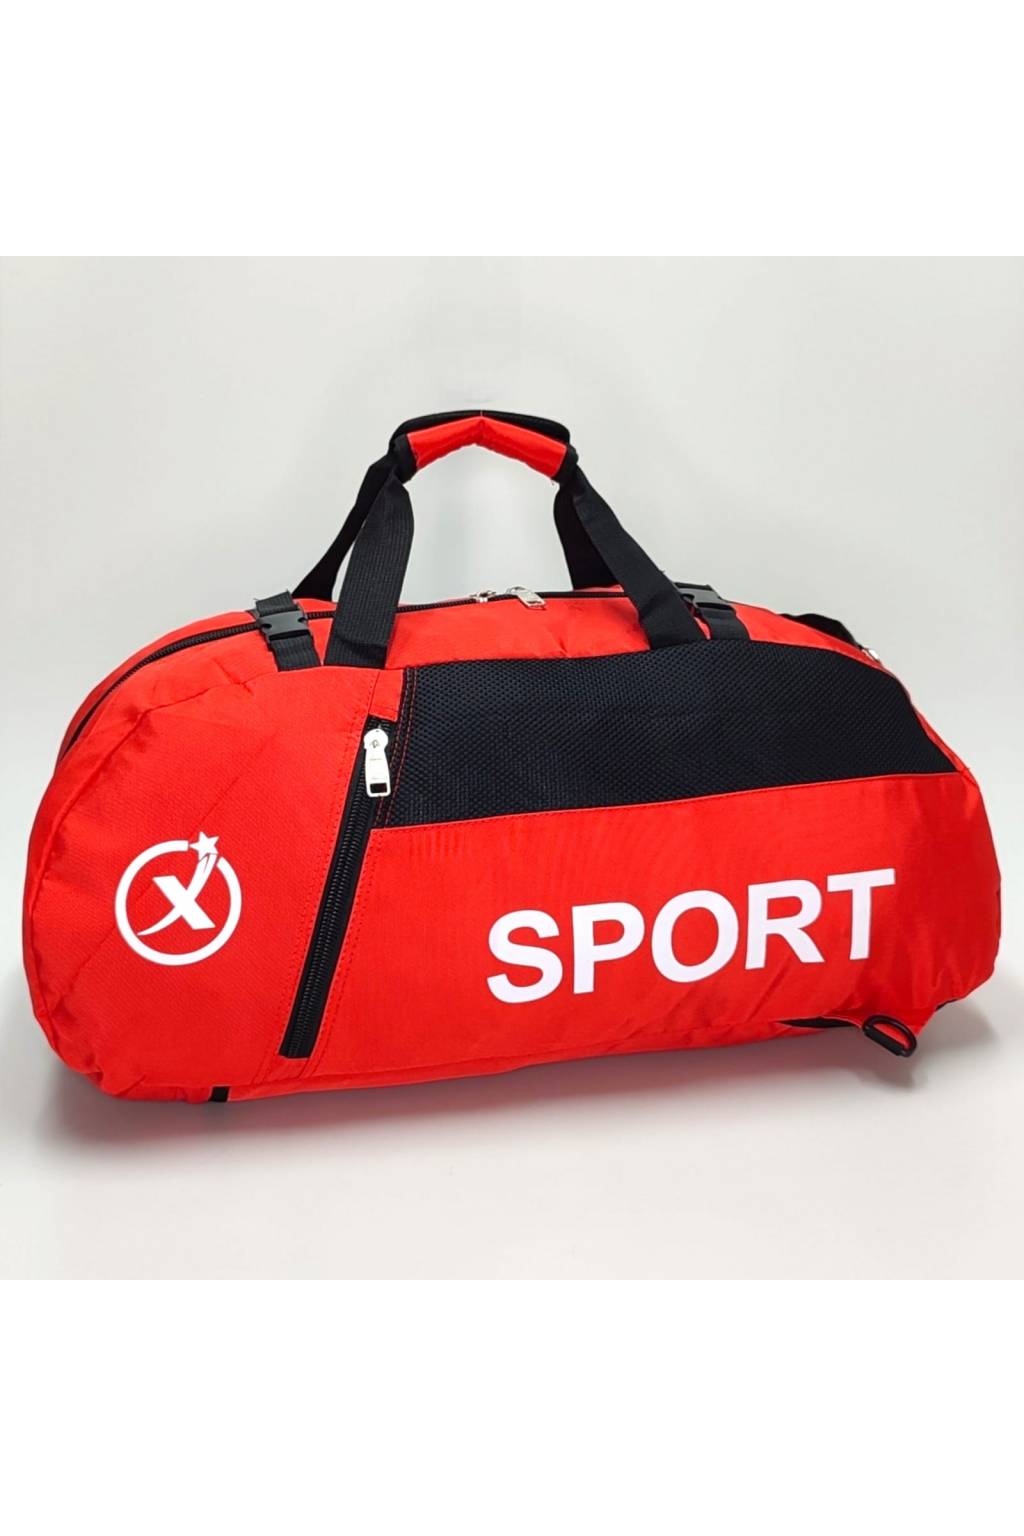 Cestovná taška ruksak B7355 červená www.kabelky vypredaj (19)